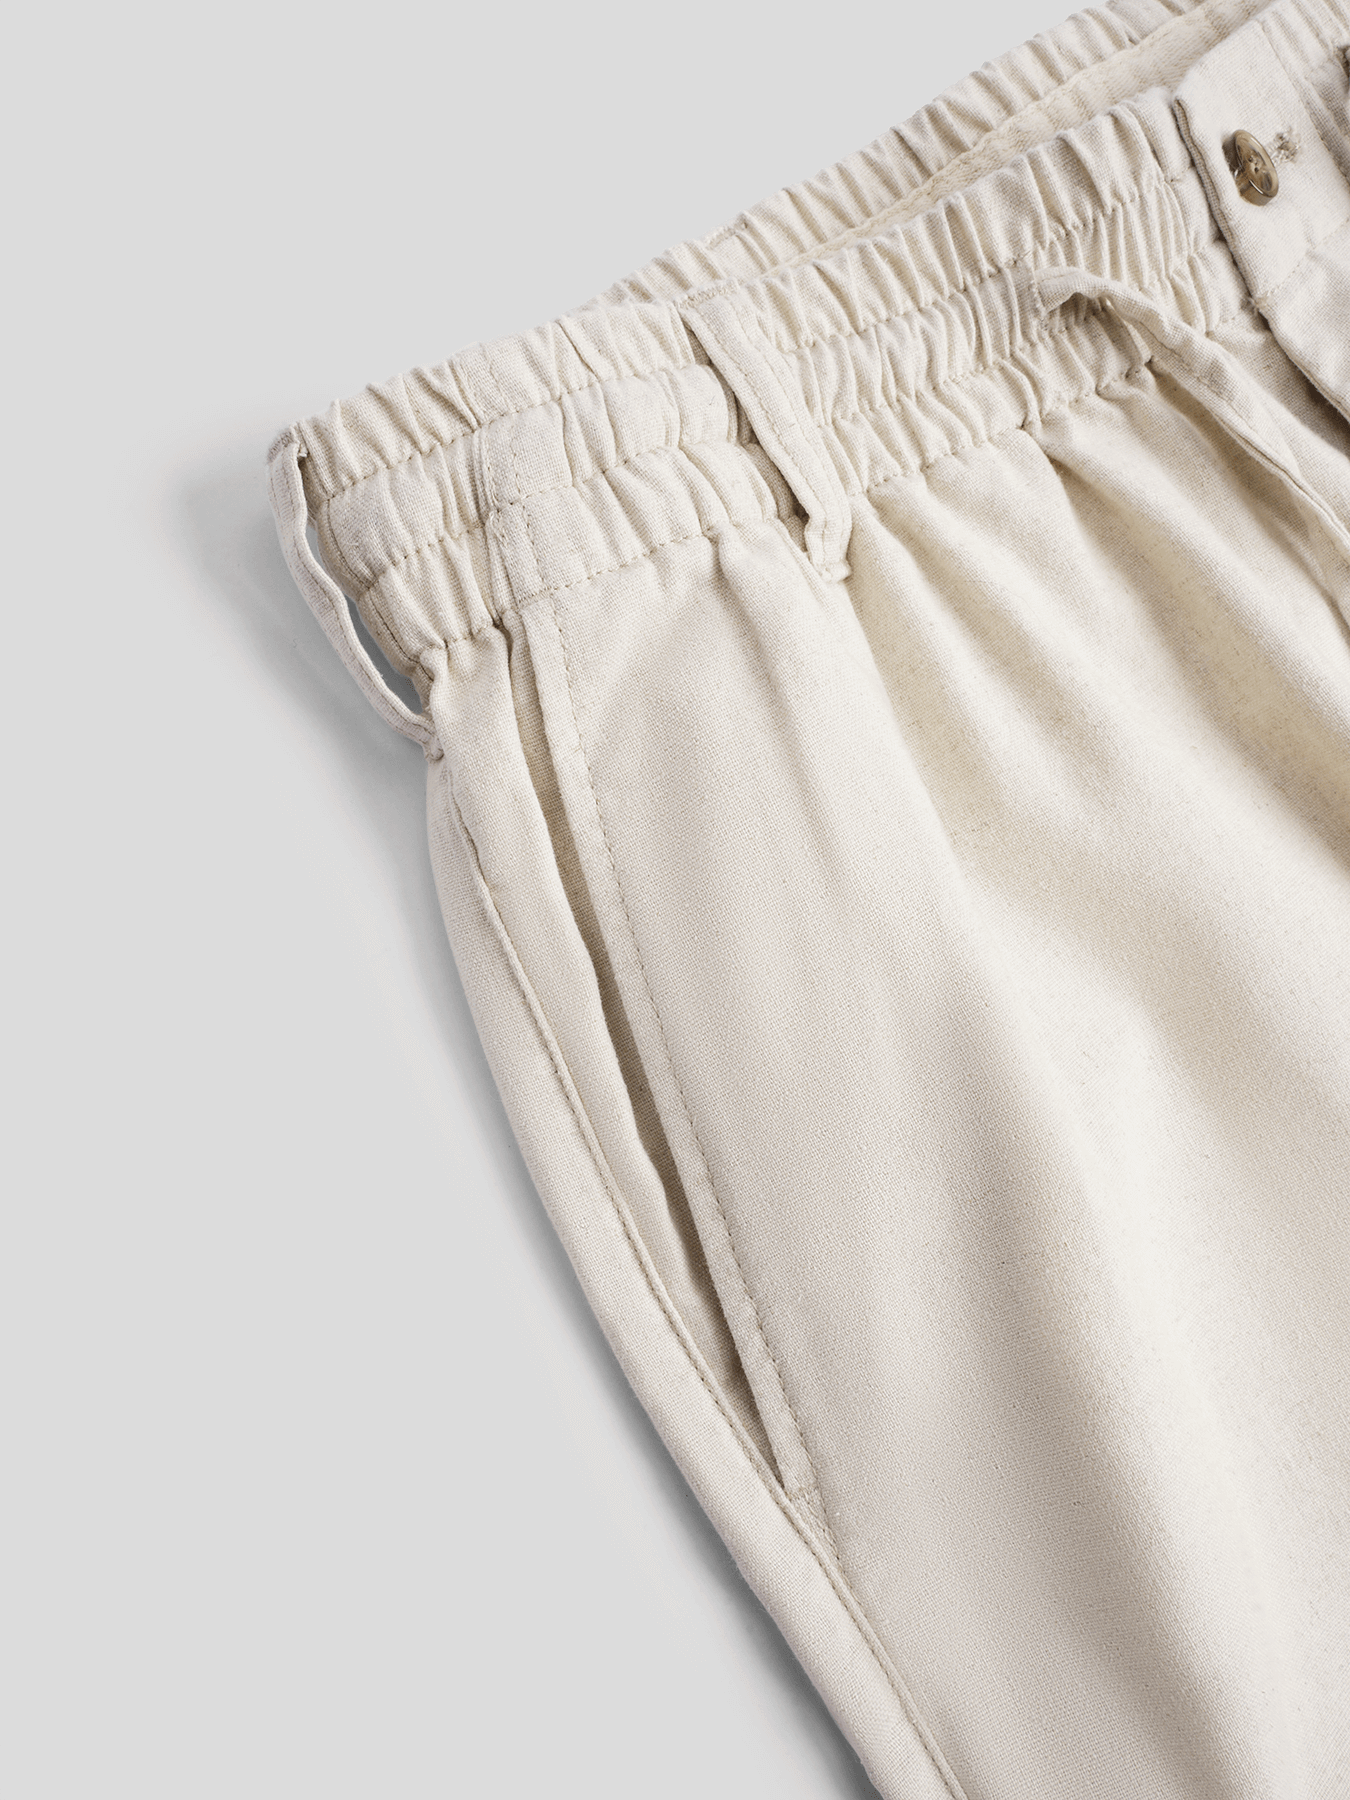 DreamWear Italian Linen Elastic Drawstring Pants